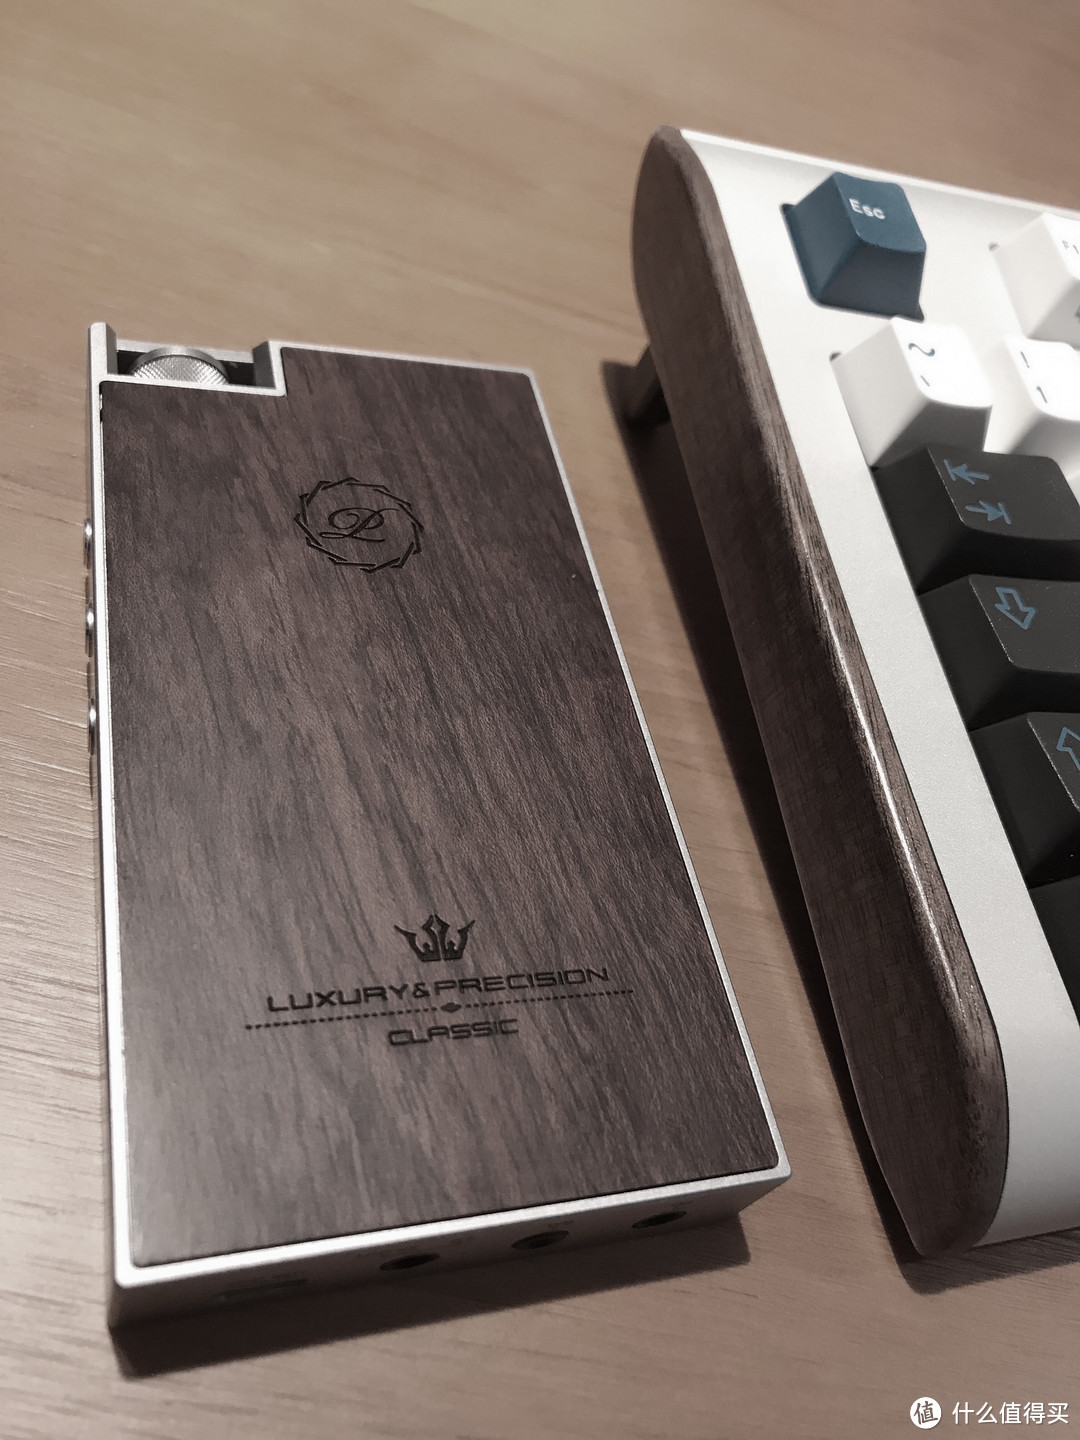 一口气收揽两个带木头的电子产品 — 定制键盘GMK Uniqey Q100和 LUXURY&PRECISION 乐彼 L3pro